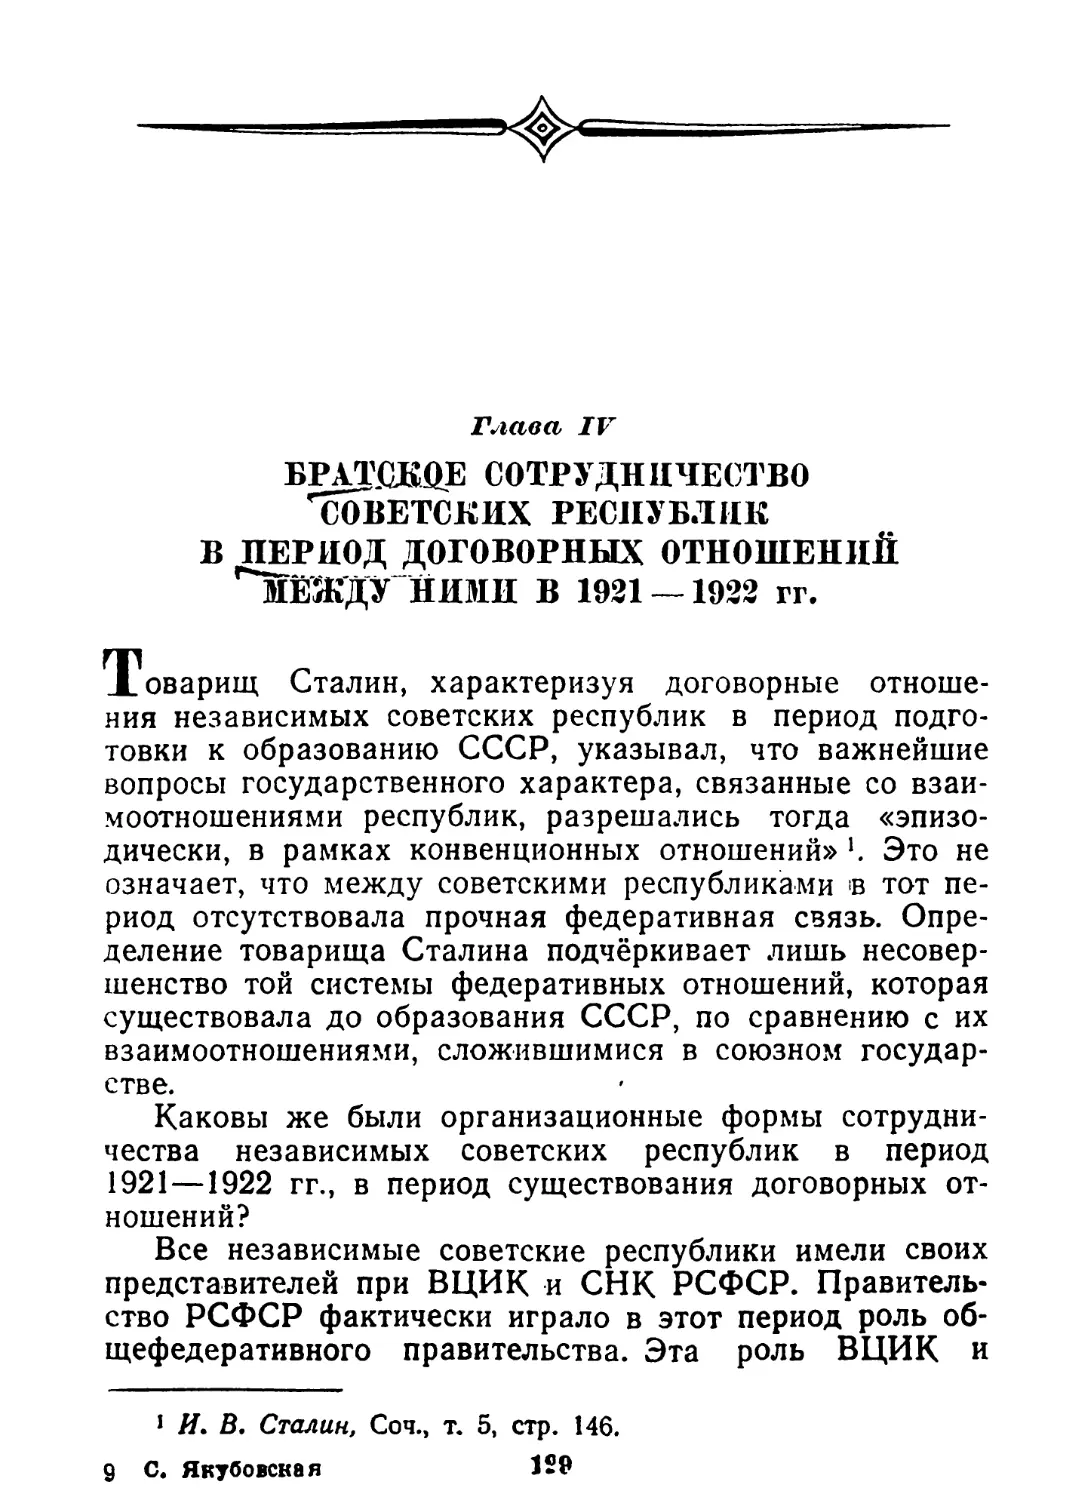 Глава IV. Братское сотрудничество советских республик в период договорных отношений между ними в 1921—1922 гг